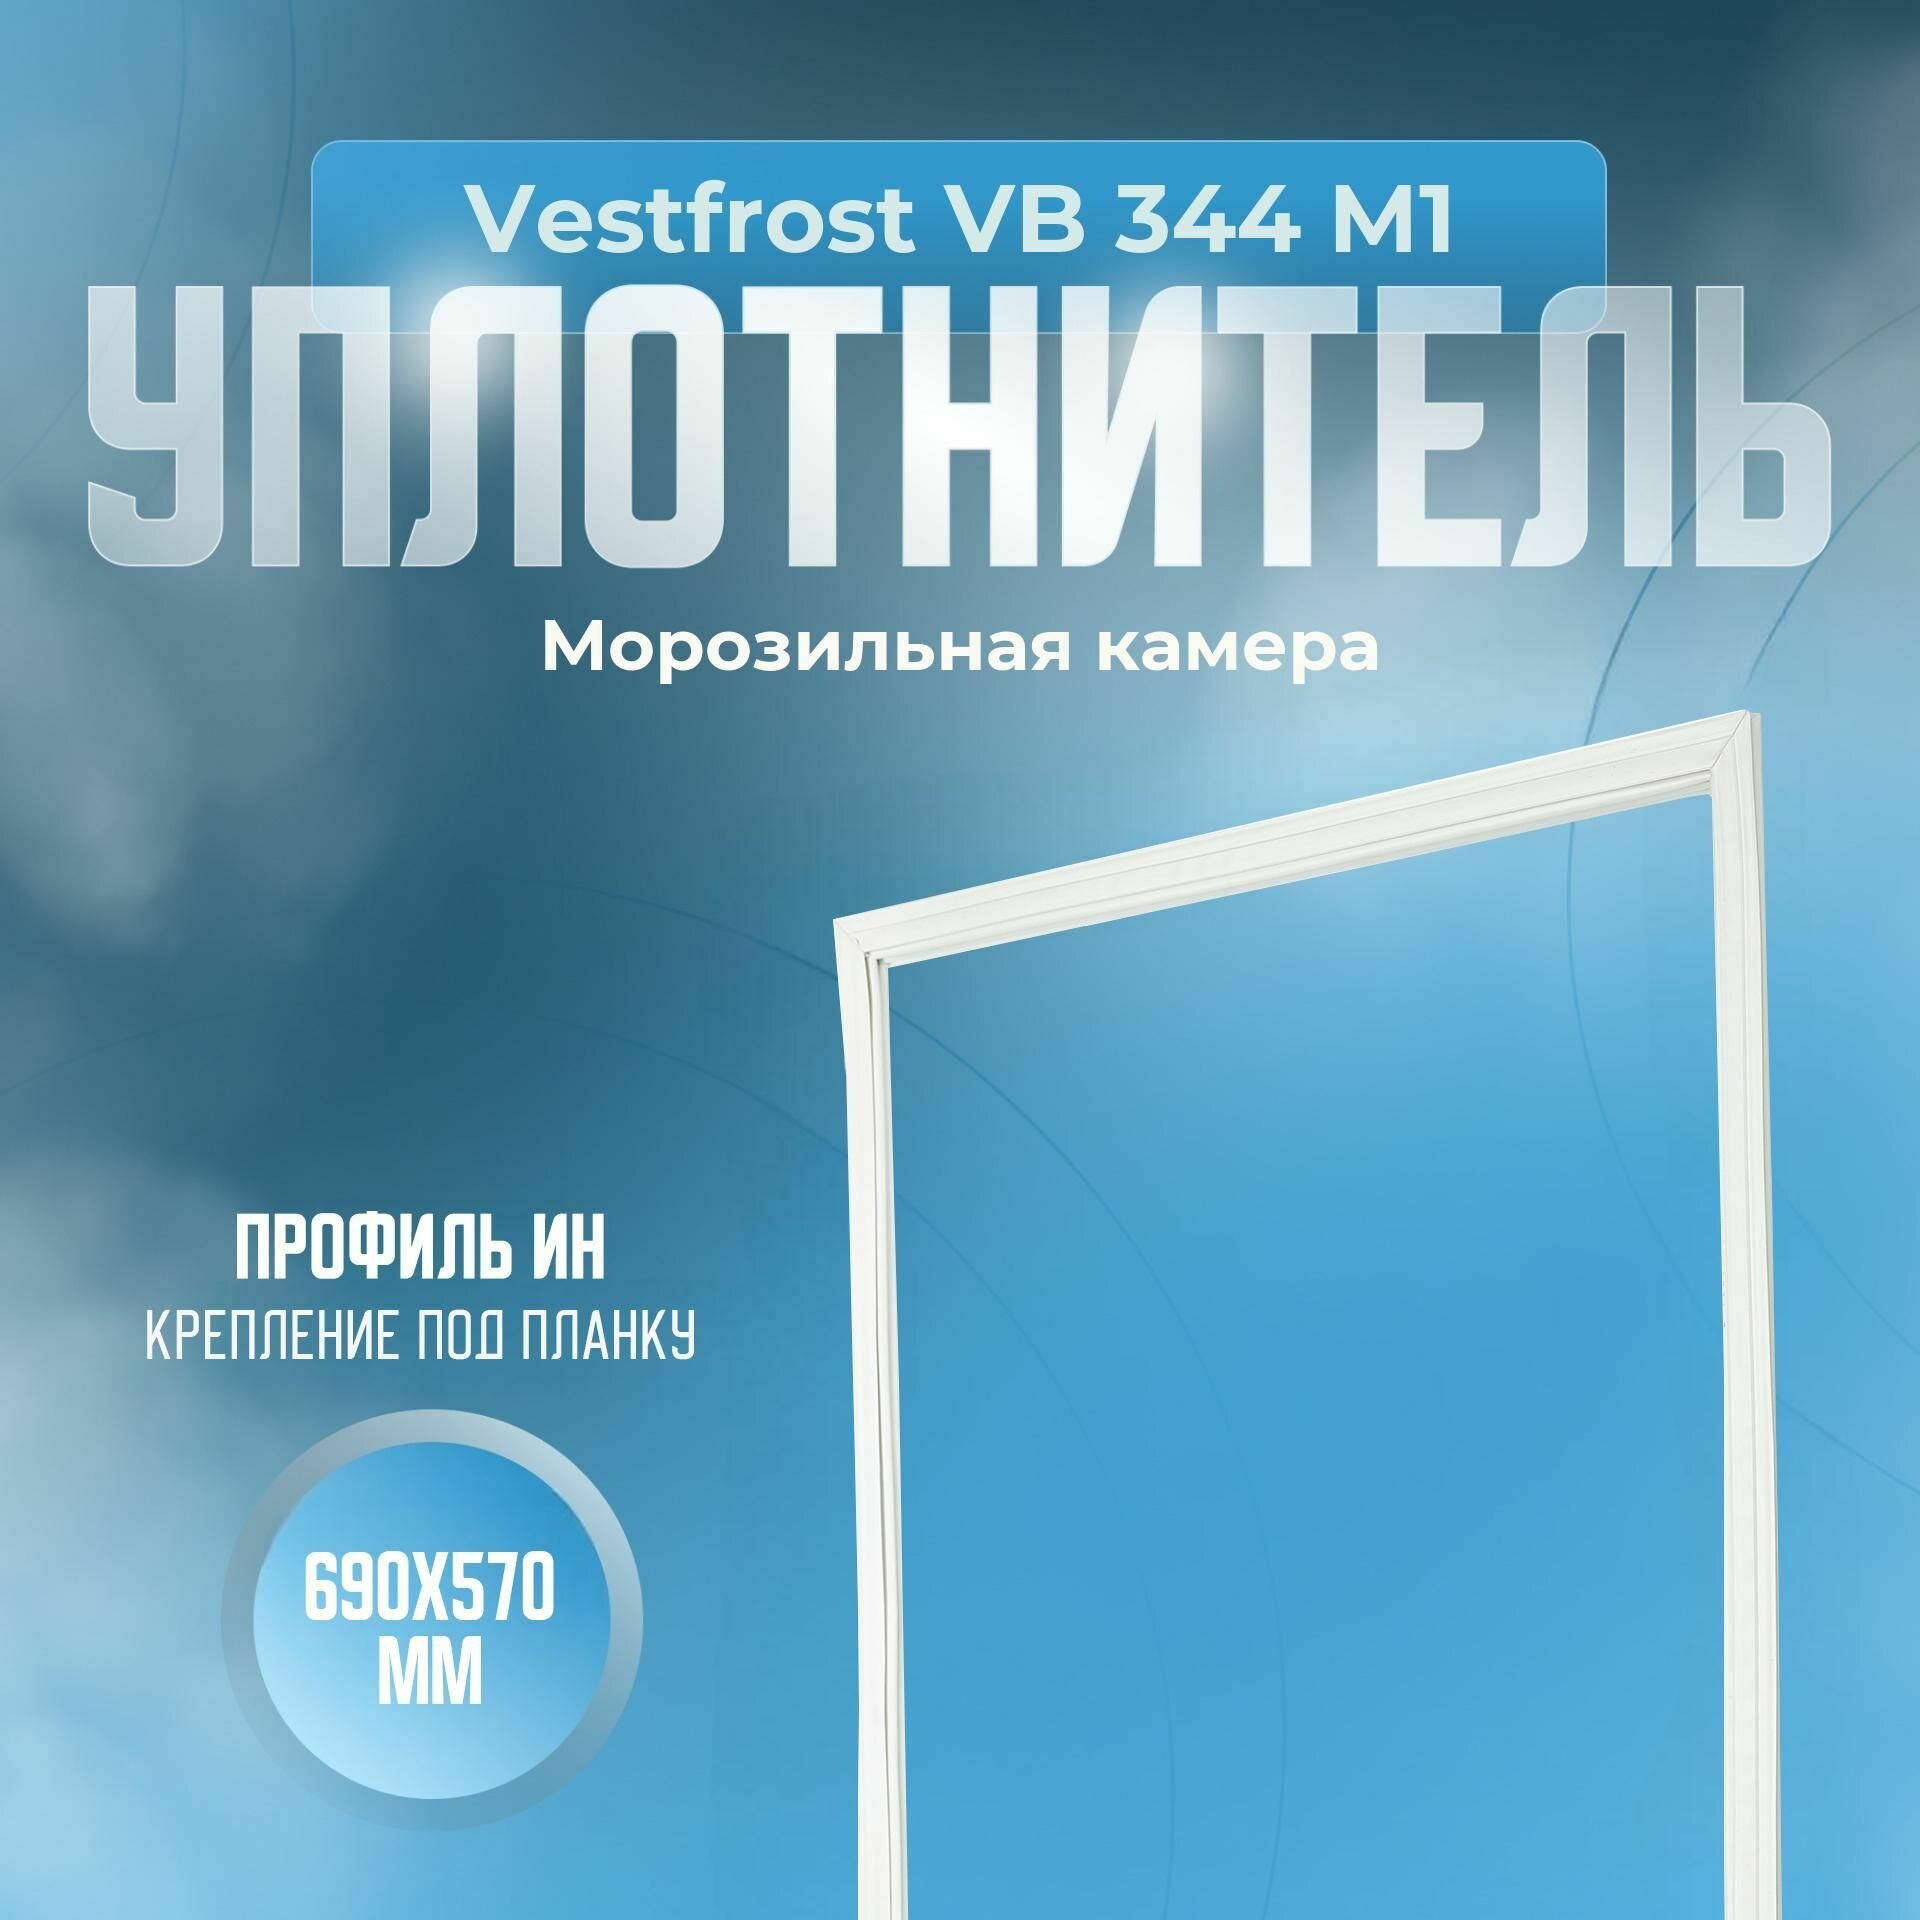 Уплотнитель Vestfrost VB 344 M1. м. к, Размер - 690х570 мм. ИН